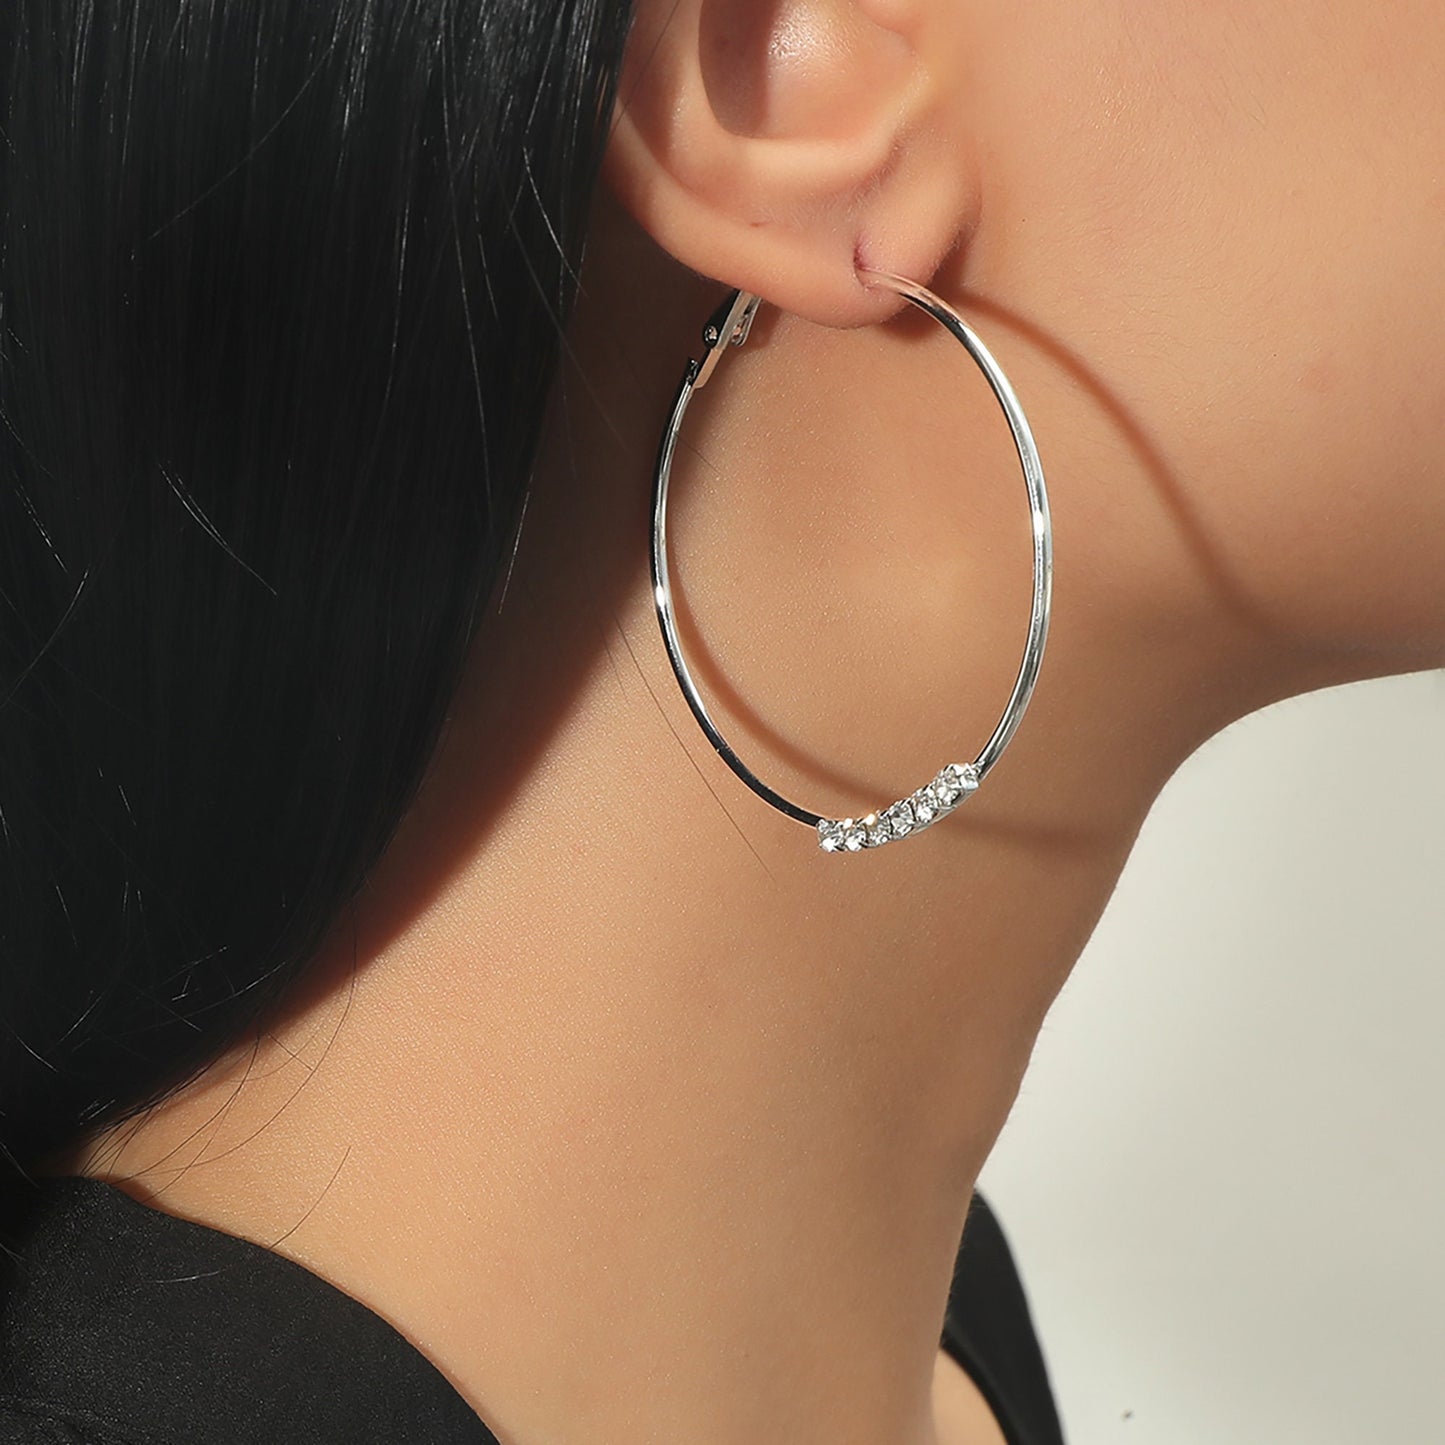 Titanium Rhinestones Large Hoop Earrings, Non Tarnish Earrings, Implant Grade Titanium Waterproof Earrings, Vintage Style Earrings, Minimal